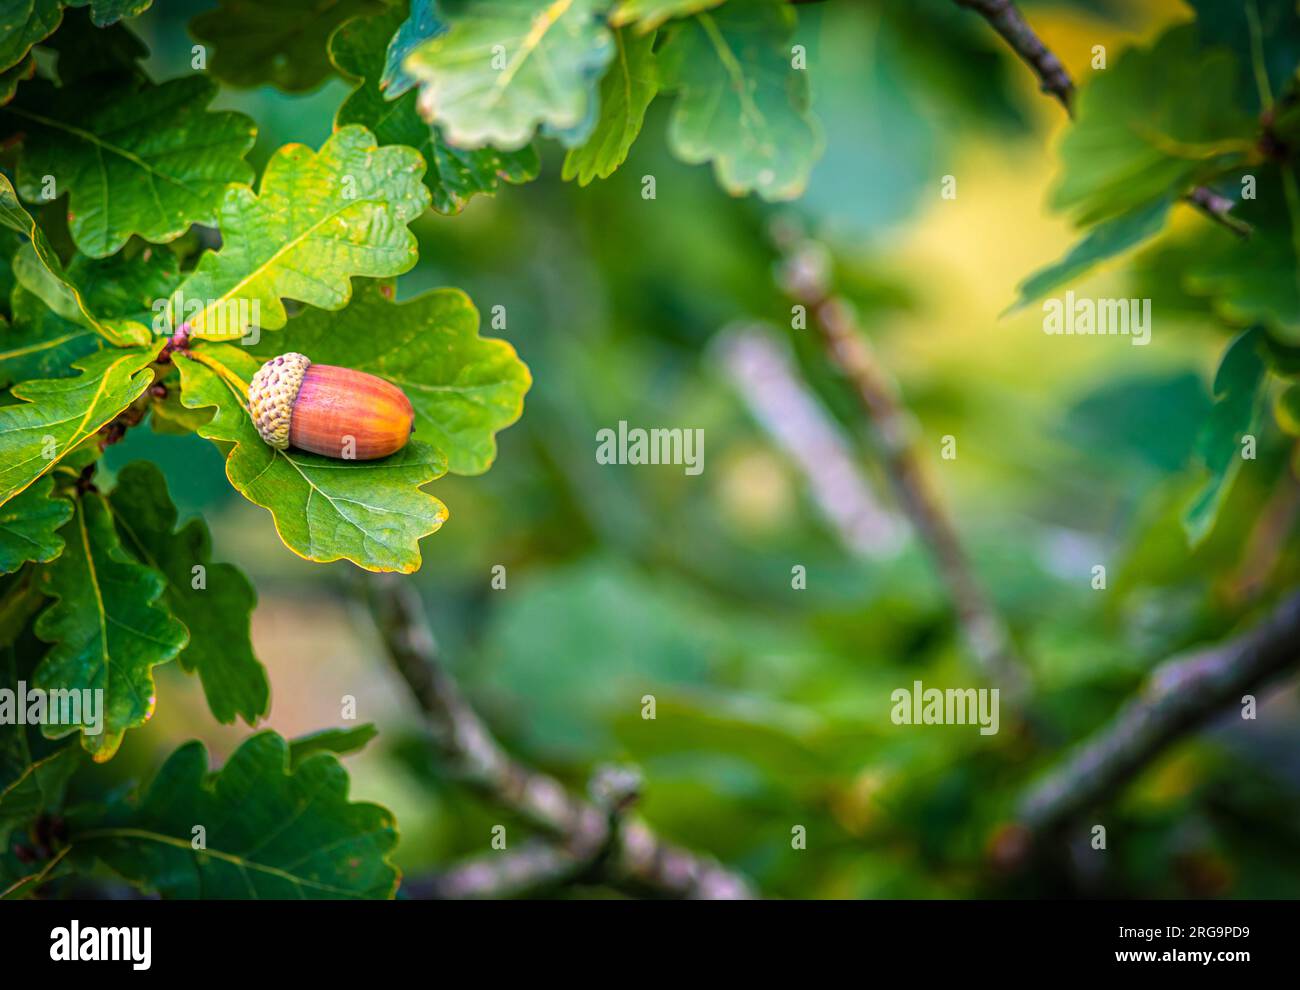 Selektive Fokussierung auf eine einzelne Amais auf einer Eiche im Herbst mit einem Naturschauspiel, das Grün und Zweige auf dieser Seite zeigt Stockfoto